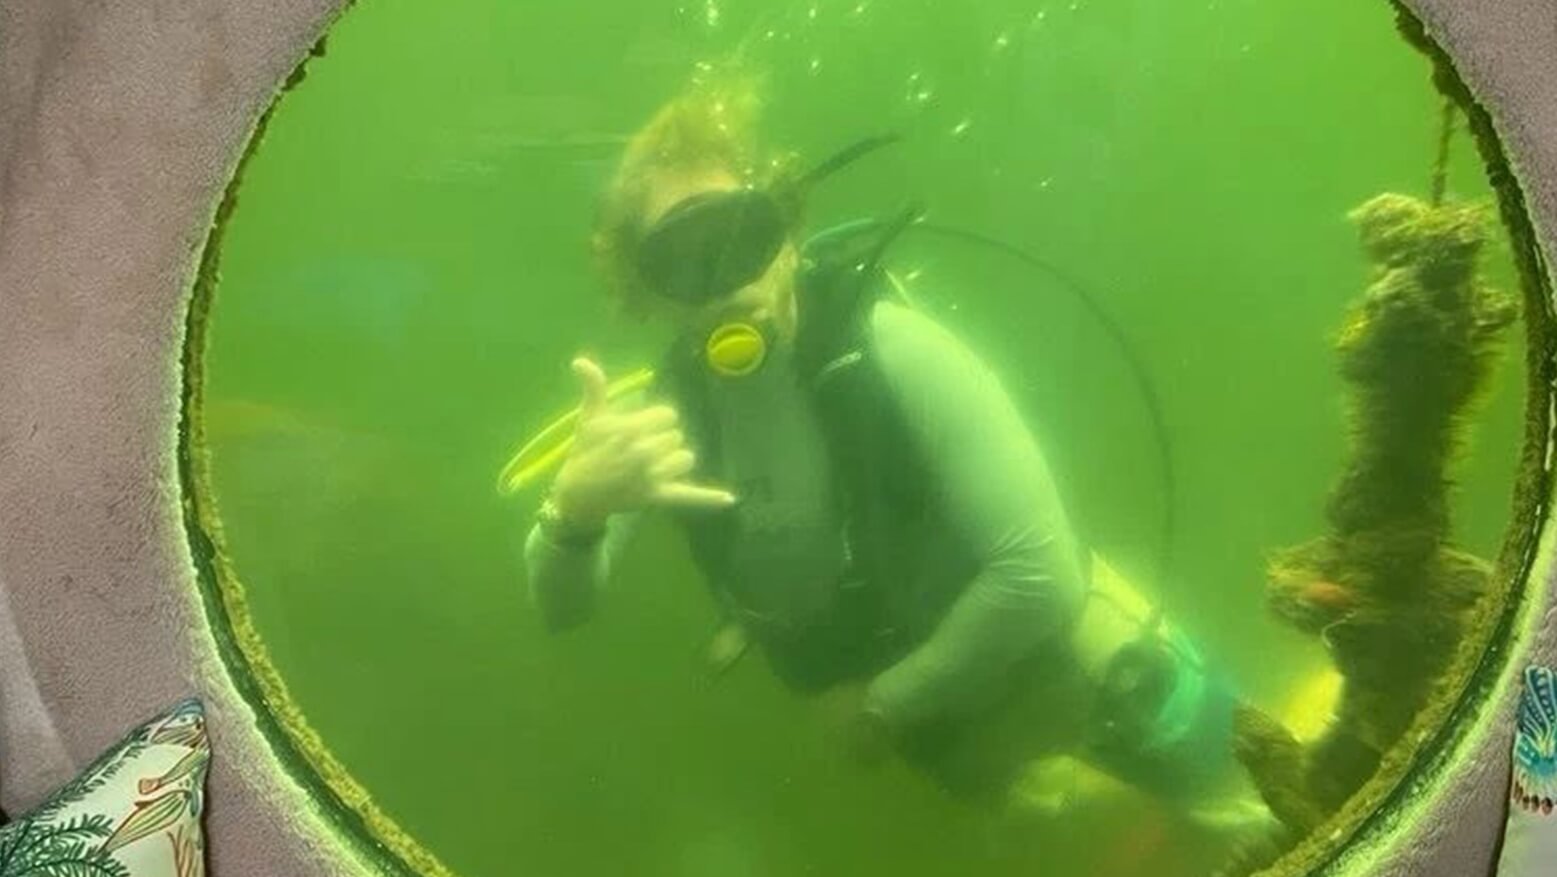 Профессор проведет 100 дней под водой, чтобы улучшить здоровье. Профессор Джозеф Дитури уже начал эксперимент в ходе которого проведет 100 дней под водой. Фото.